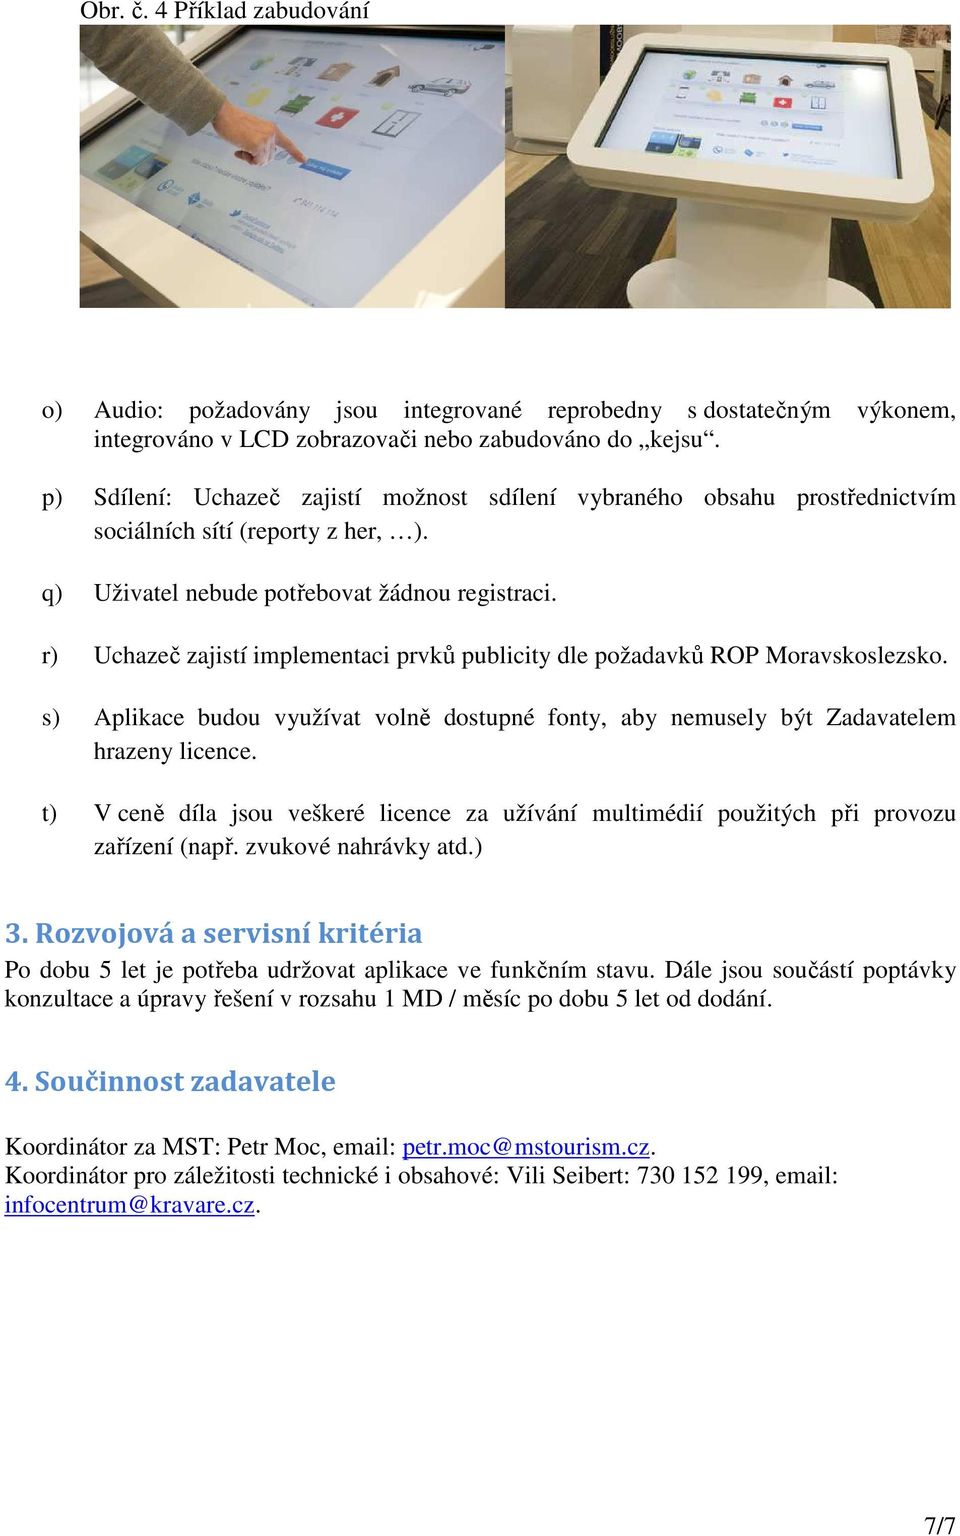 r) Uchazeč zajistí implementaci prvků publicity dle požadavků ROP Moravskoslezsko. s) Aplikace budou využívat volně dostupné fonty, aby nemusely být Zadavatelem hrazeny licence.